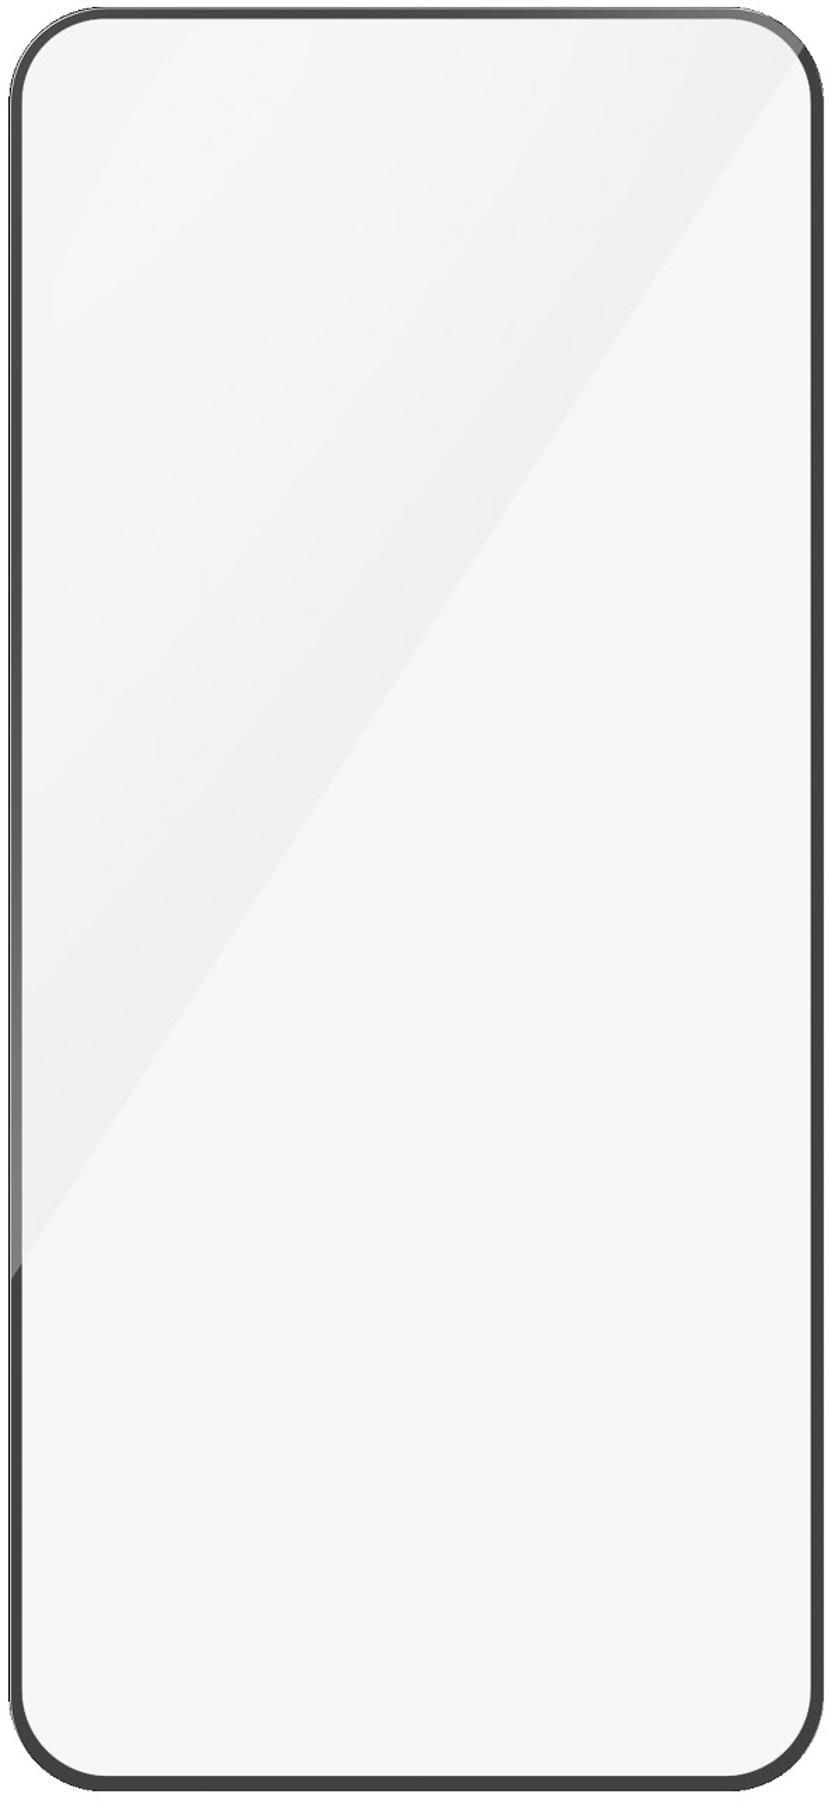 Panzerglass Ultra-Wide Fit Xiaomi 14